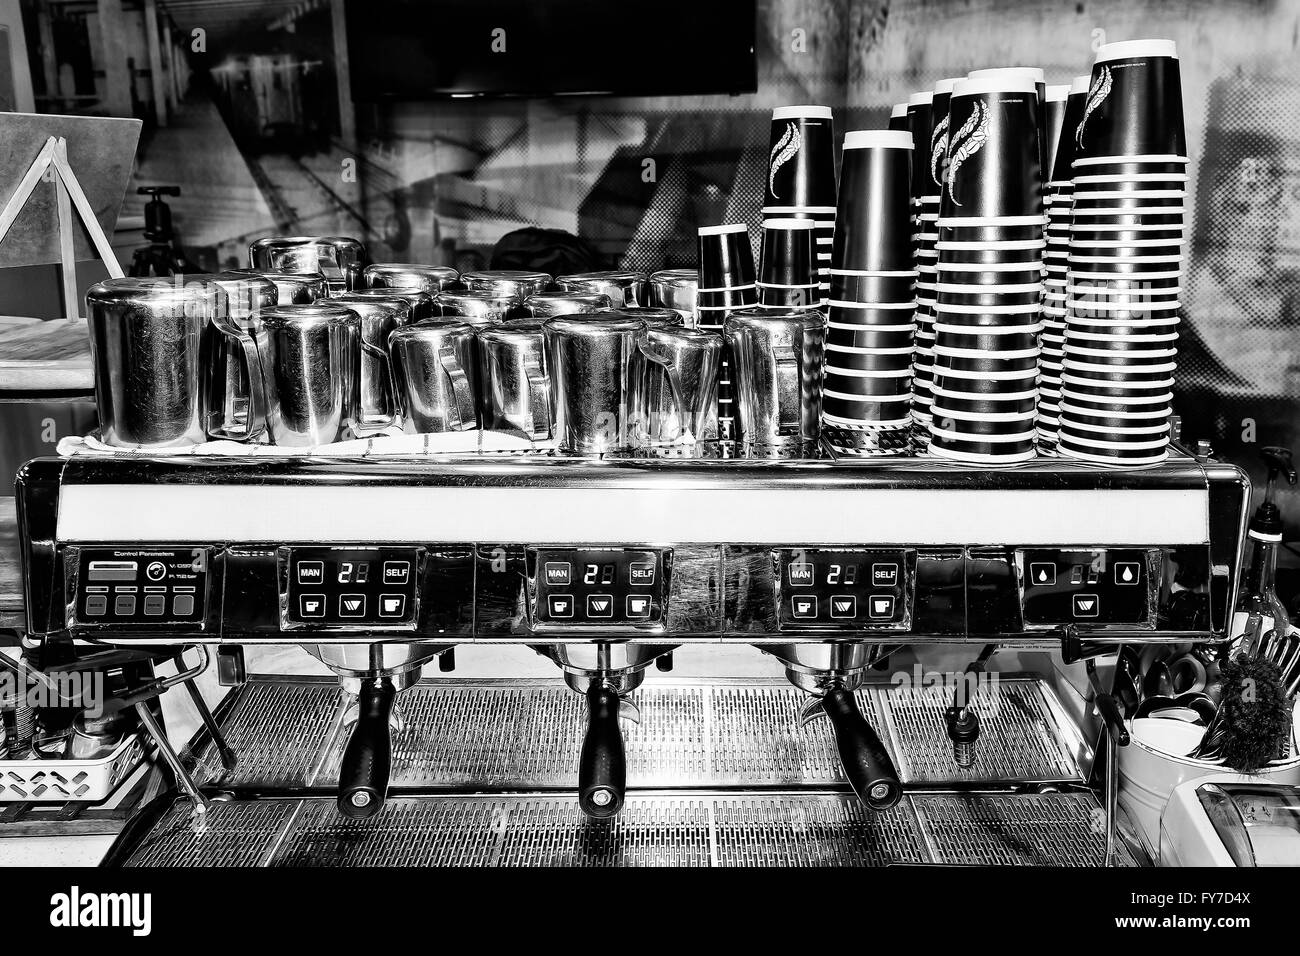 Schwarz weißes Bild der großen industriellen Barista Kaffee Maschine in einem Café Kunden mit Haufen von Tassen und Mil servierfertig Stockfoto